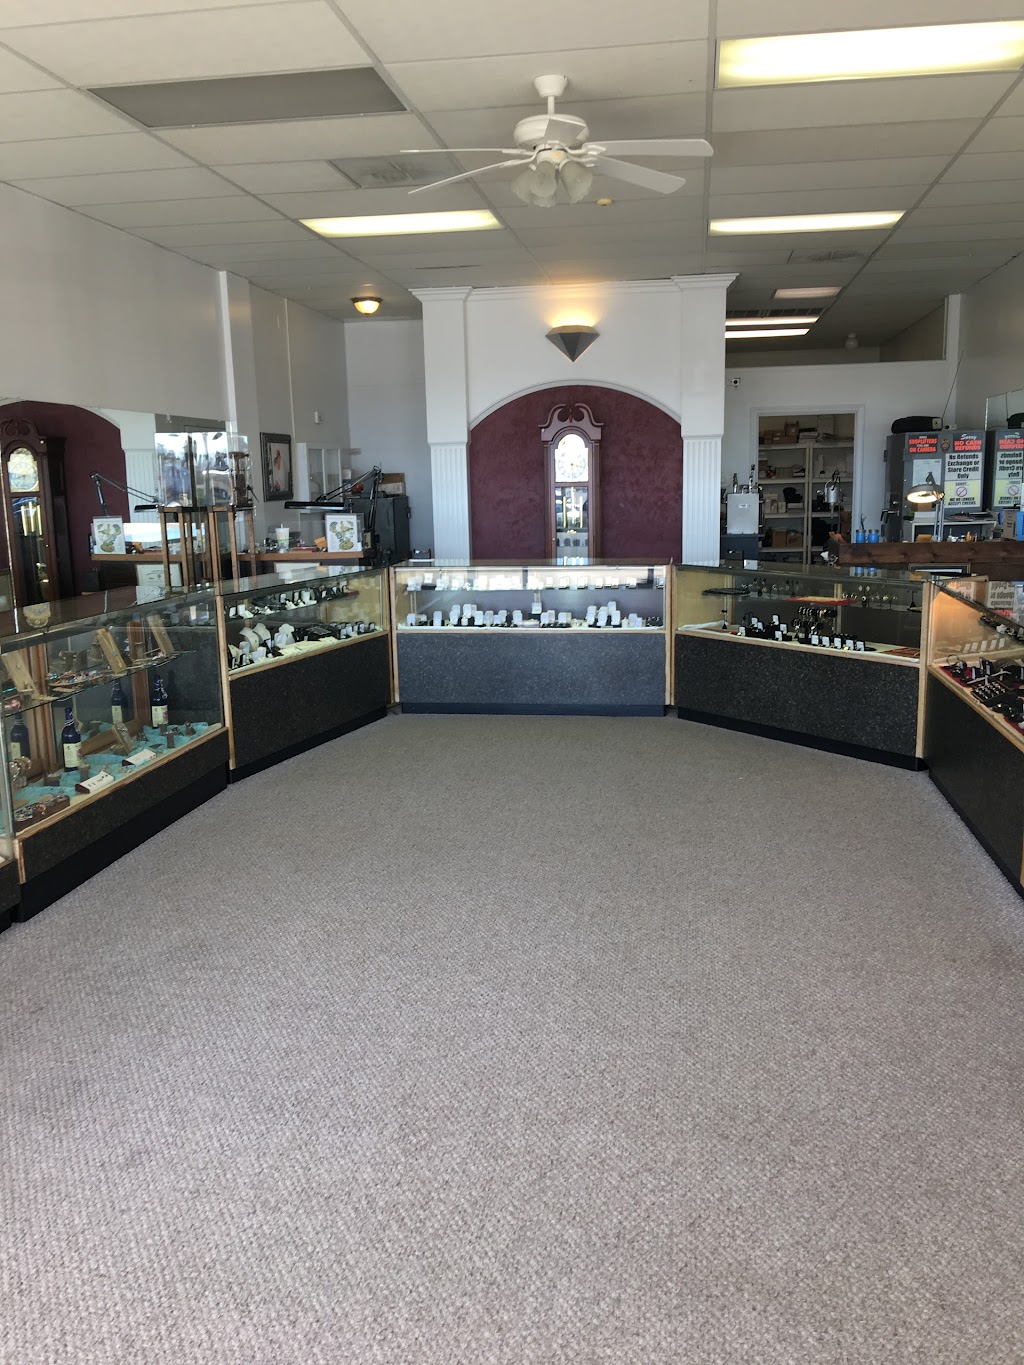 Ricks Jewelers | 111 Siler Crossing, Siler City, NC 27344 | Phone: (919) 742-1232